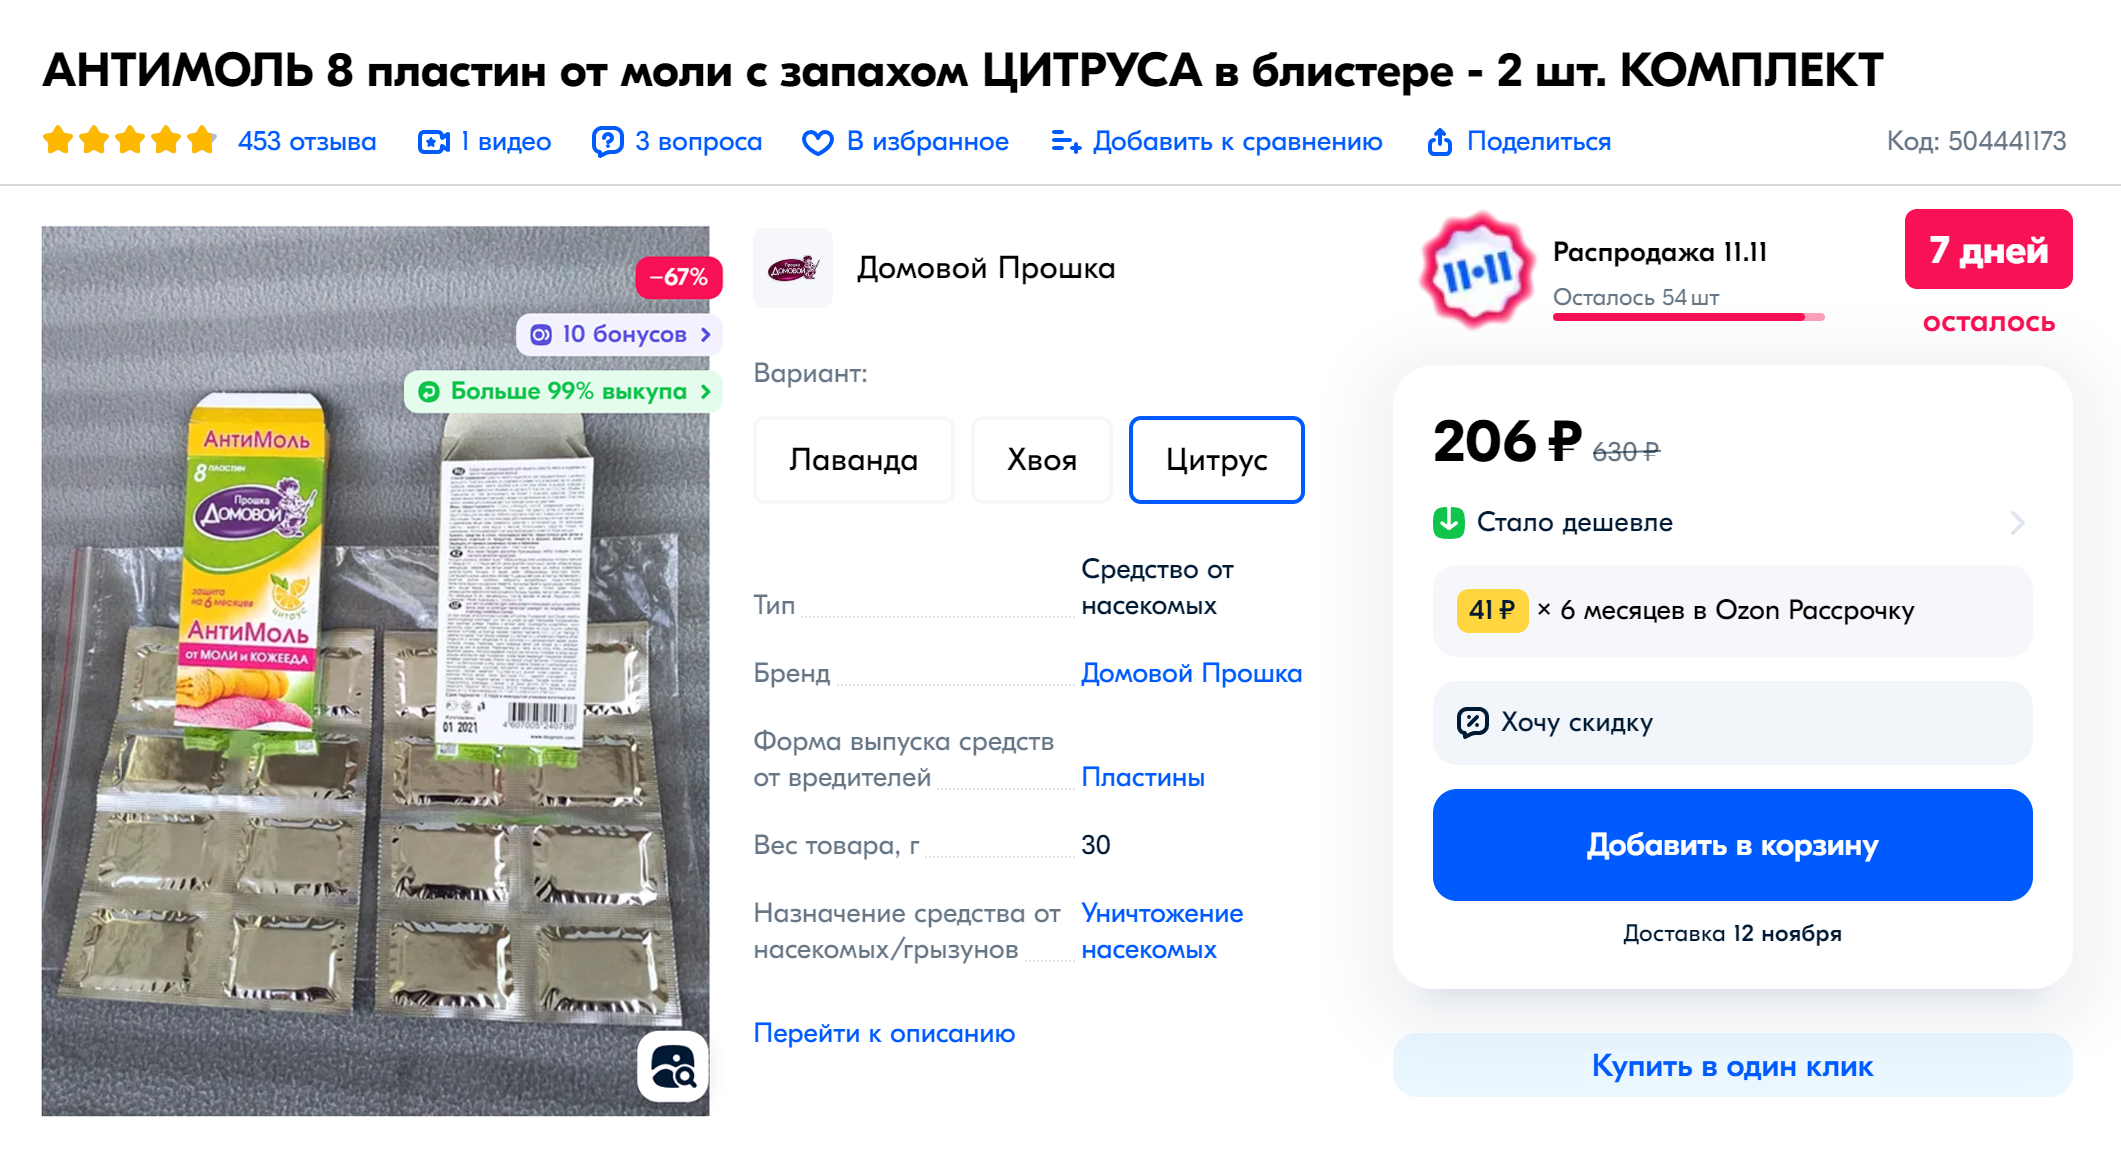 Восемь пластин для фумигатора от моли можно купить за 206 ₽. Источник: ozon.ru